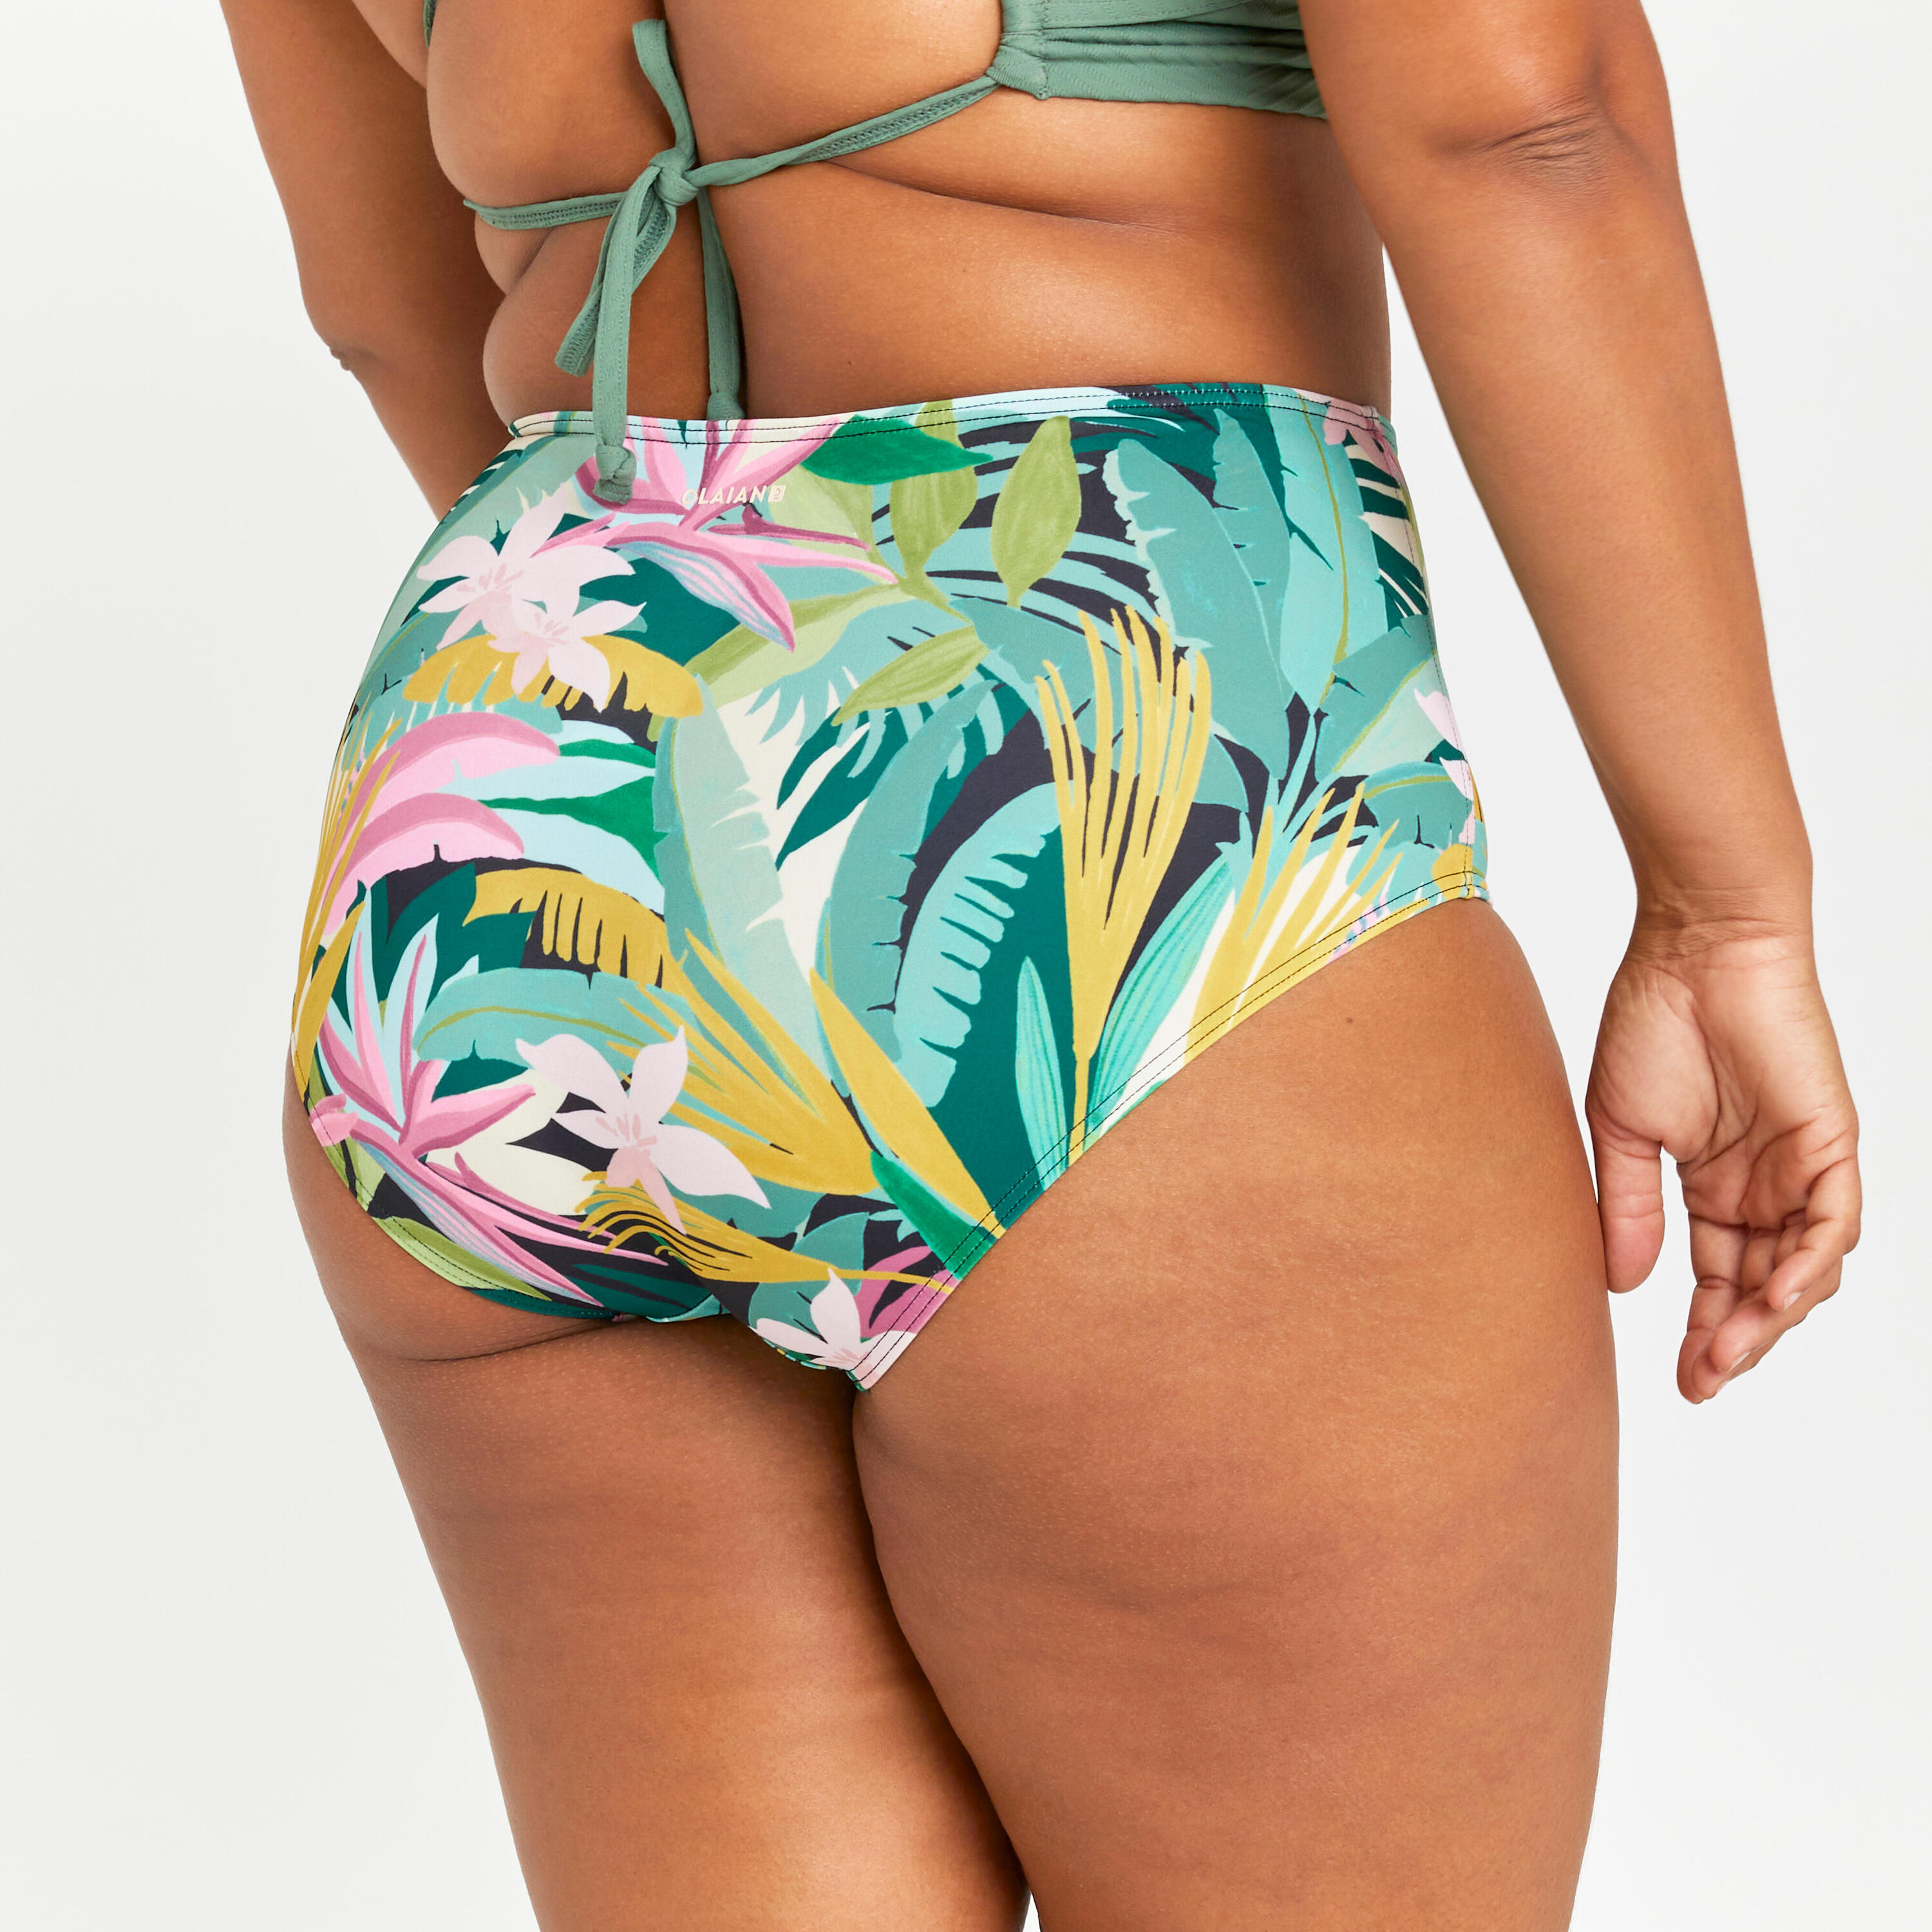 Women's high-waisted briefs swimsuit bottoms - Romi tropical green 5/6